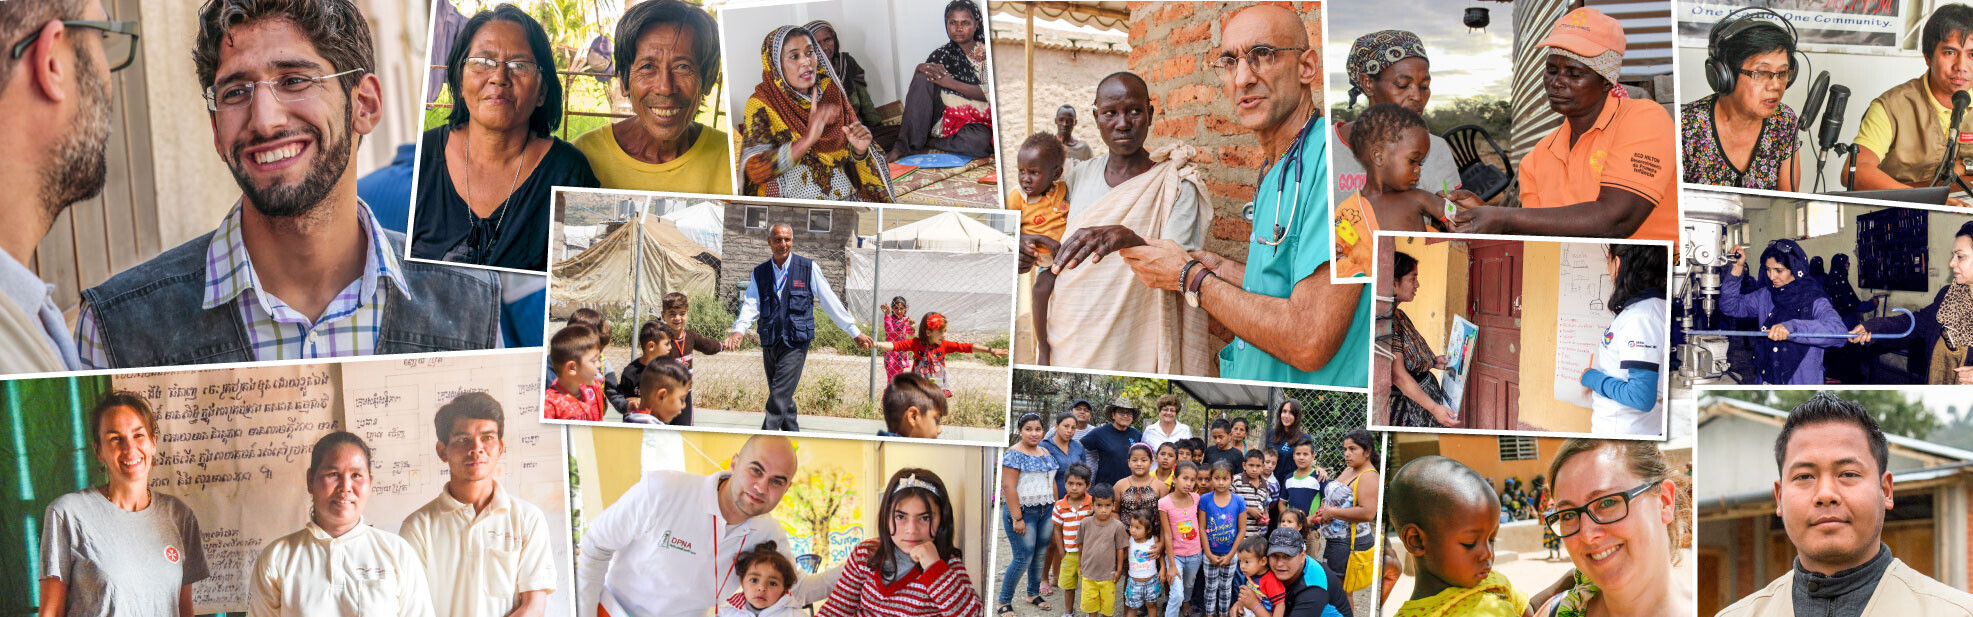 Collage von Helfern zum Welttag der Humanitären Hilfe